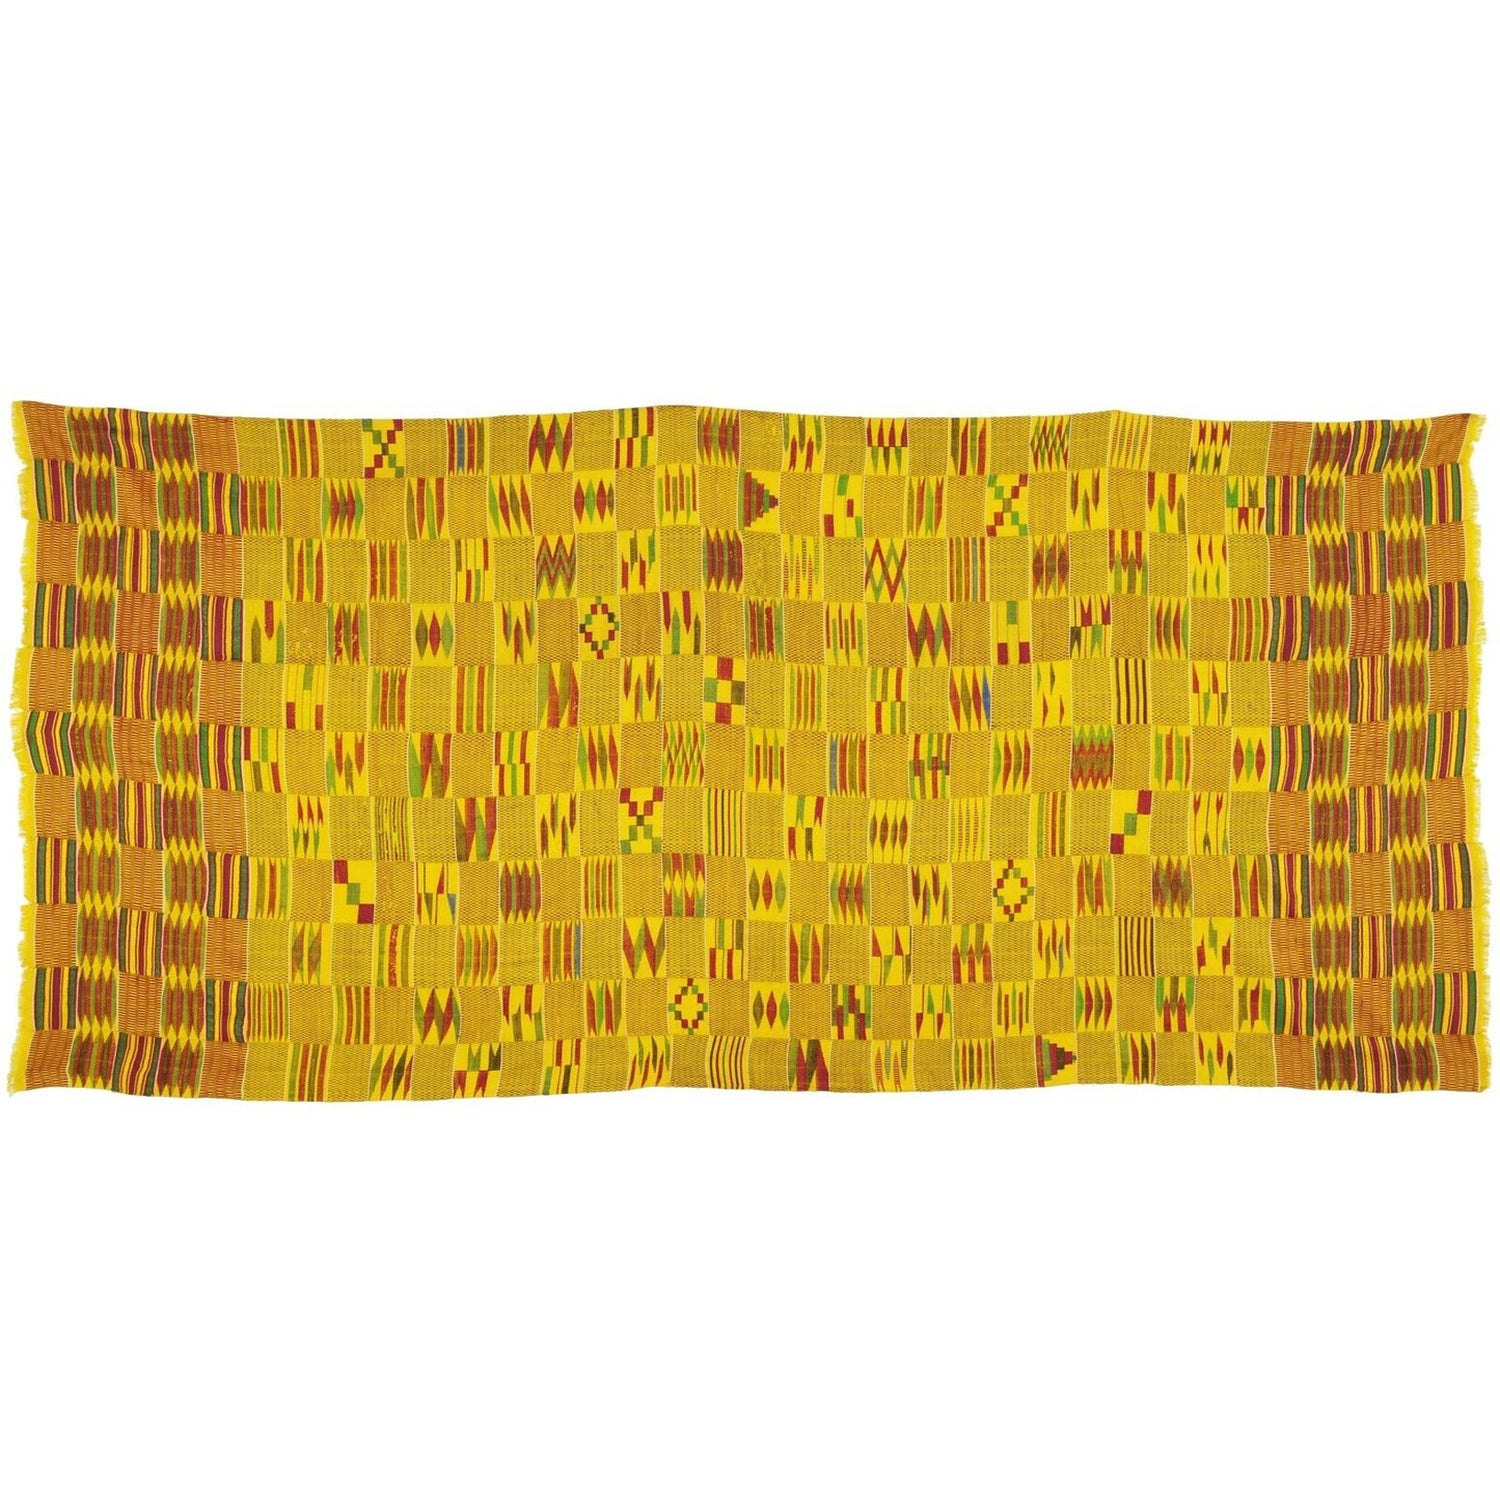 Antique Silk Ashanti Kente handwoven cloth textile Ghana African RARE GOLD DUST - Tribalgh